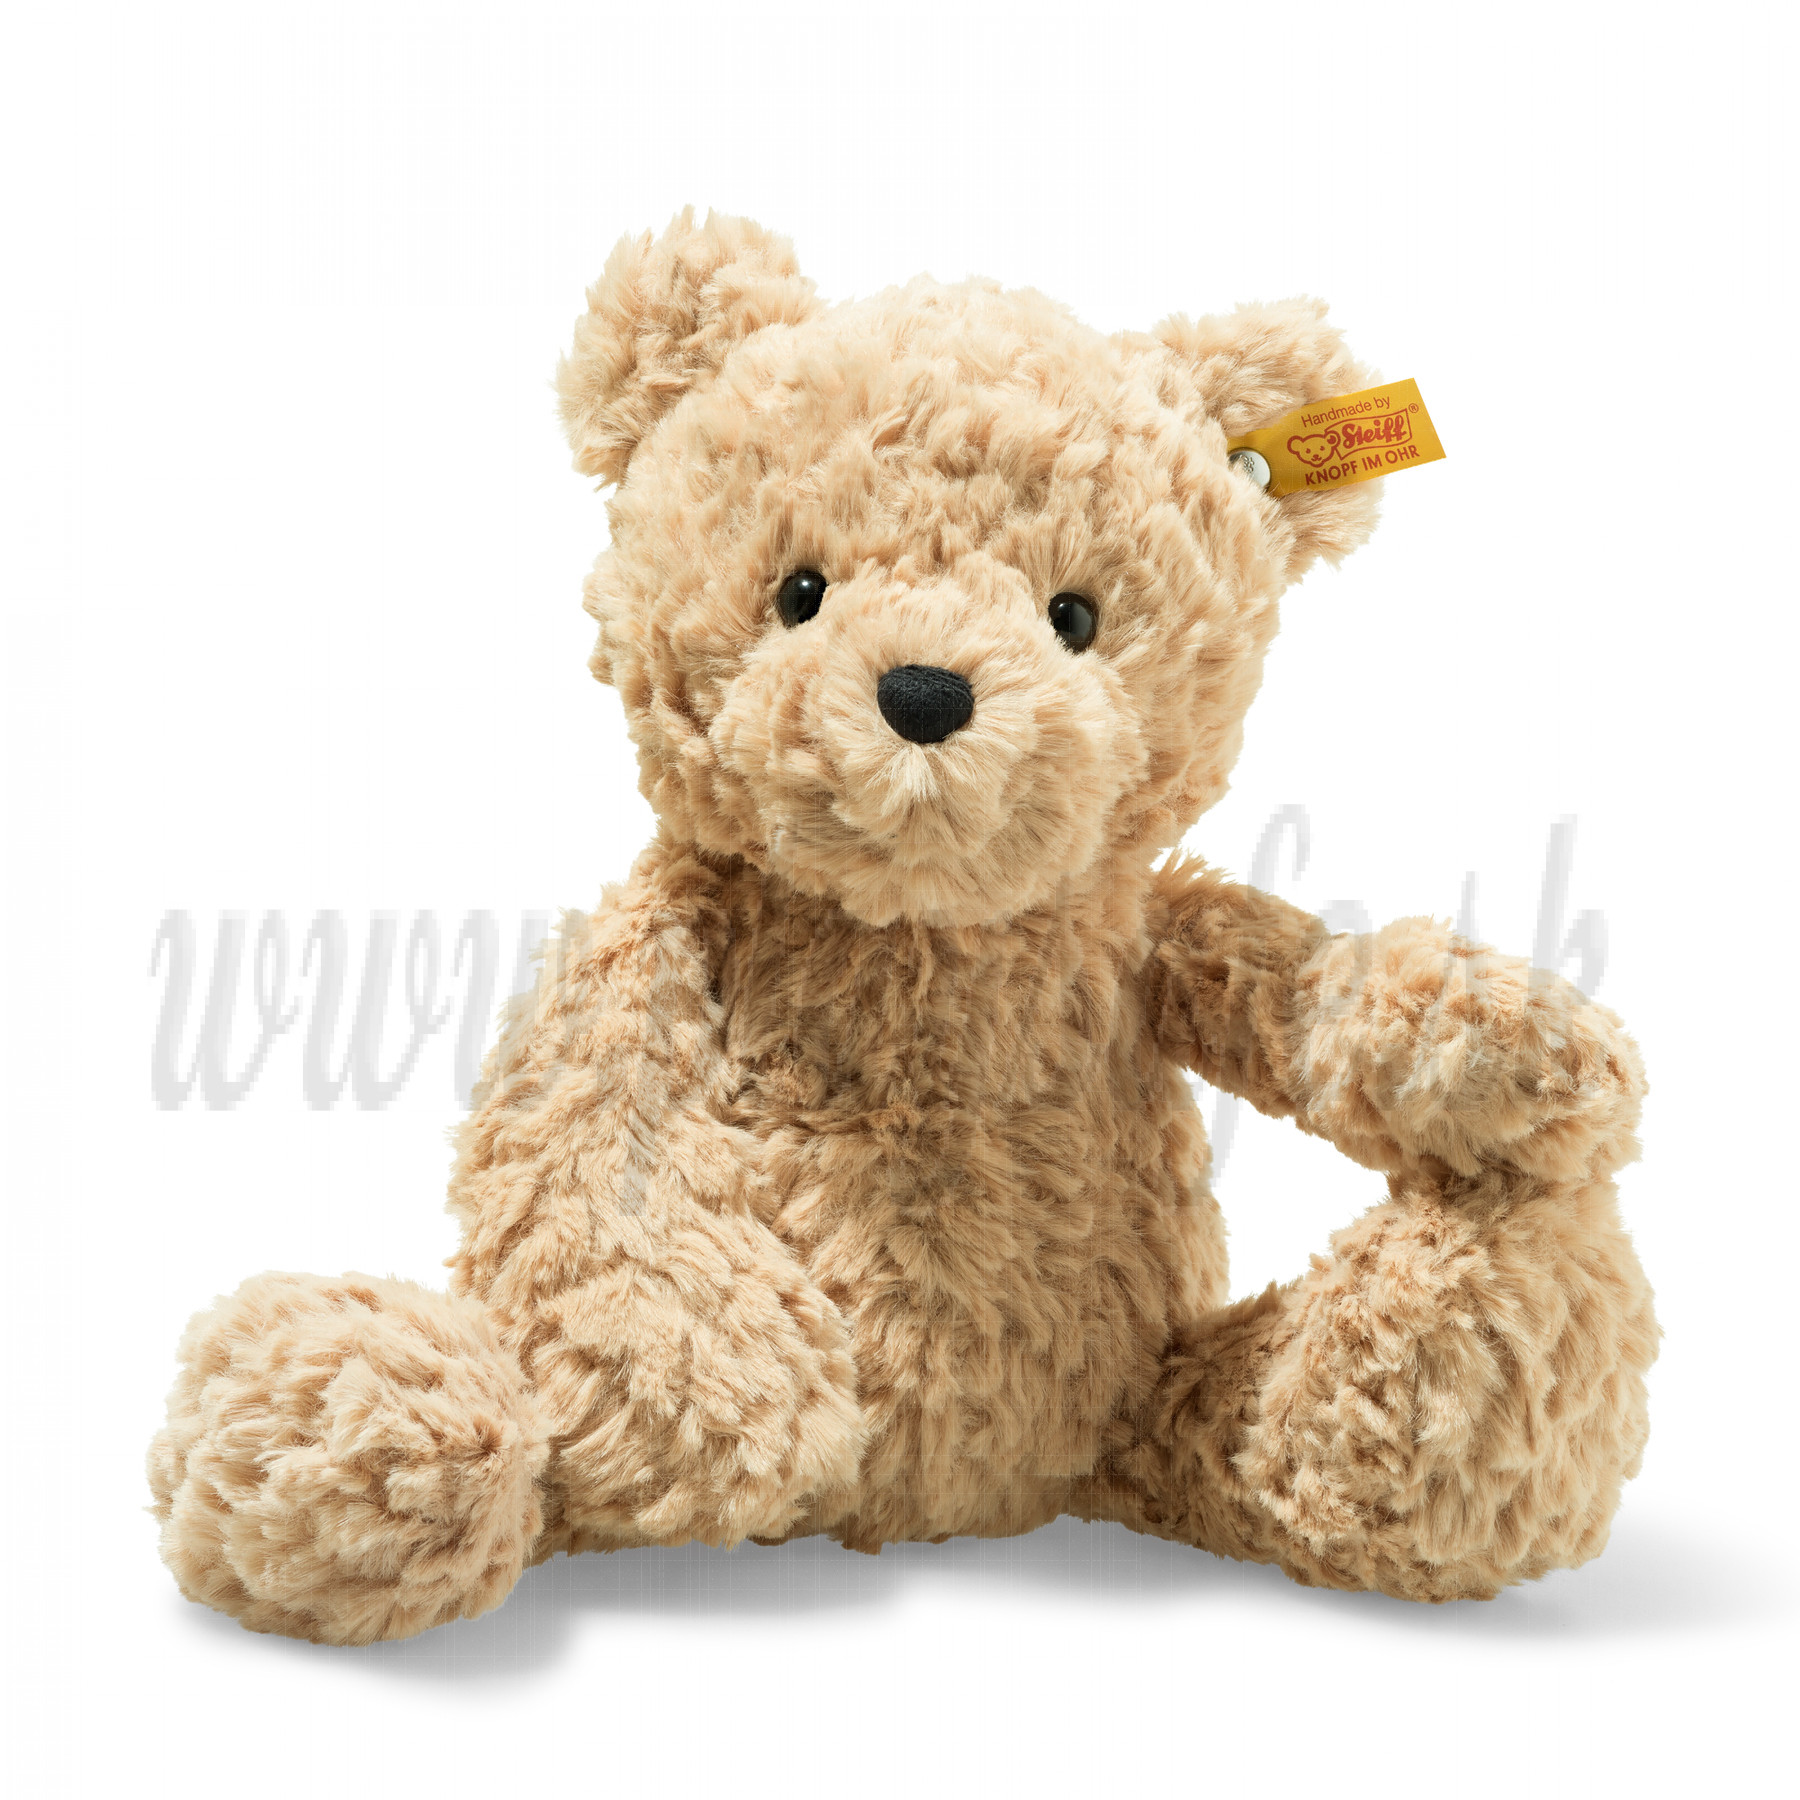 Steiff Teddy Bear Jimmy, 30cm